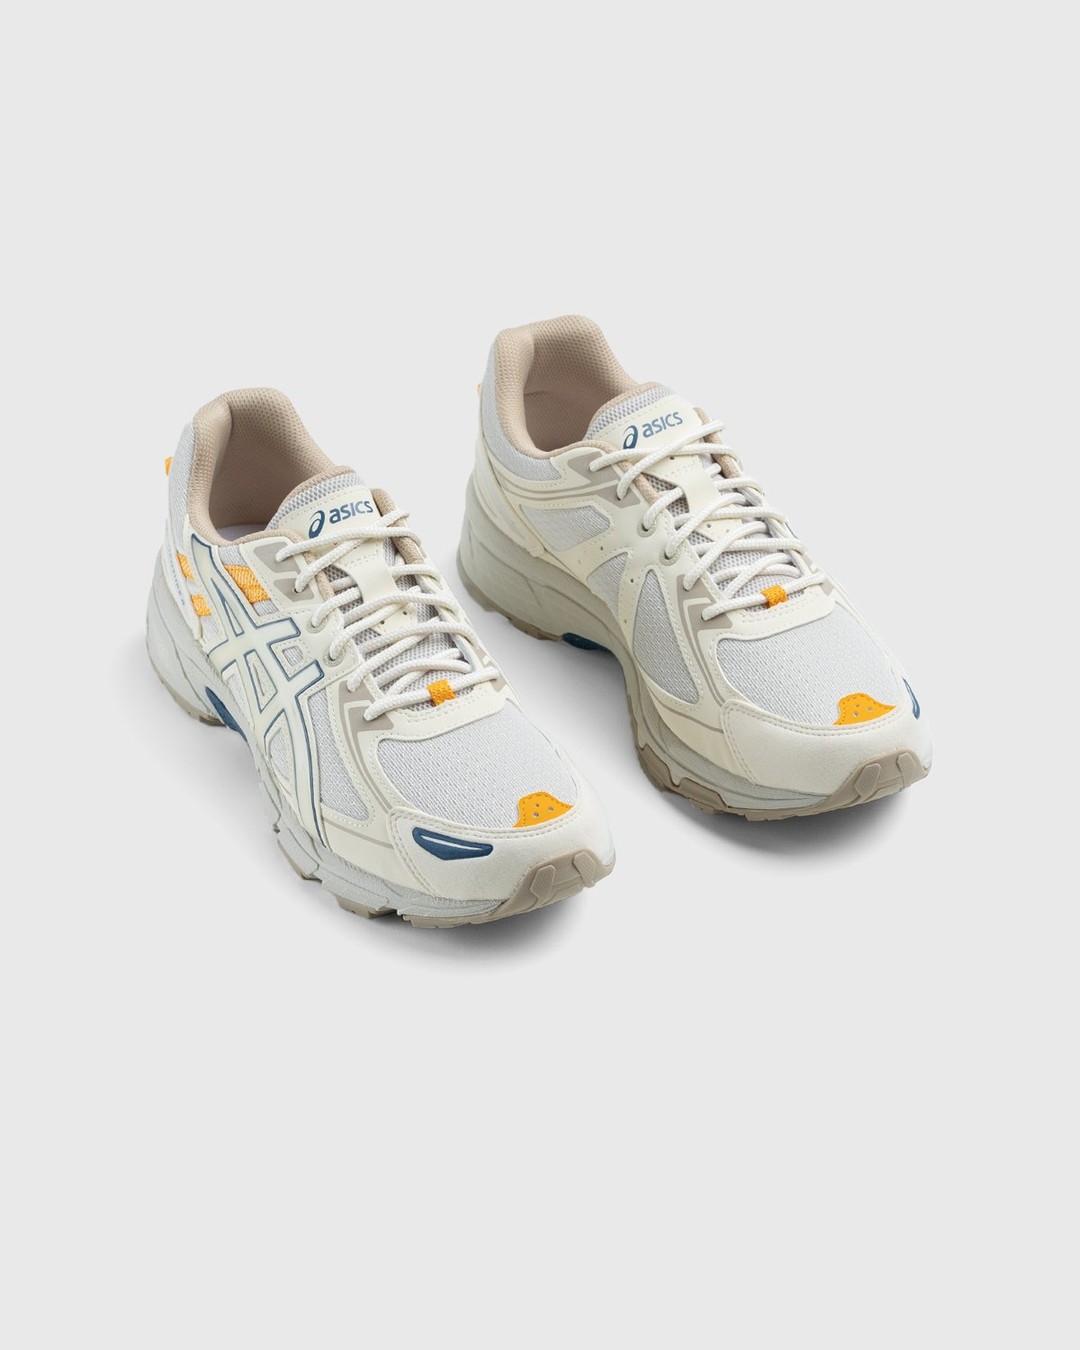 asics – Gel-Venture 6 Smoke Grey Birch - Sneakers - White - Image 3